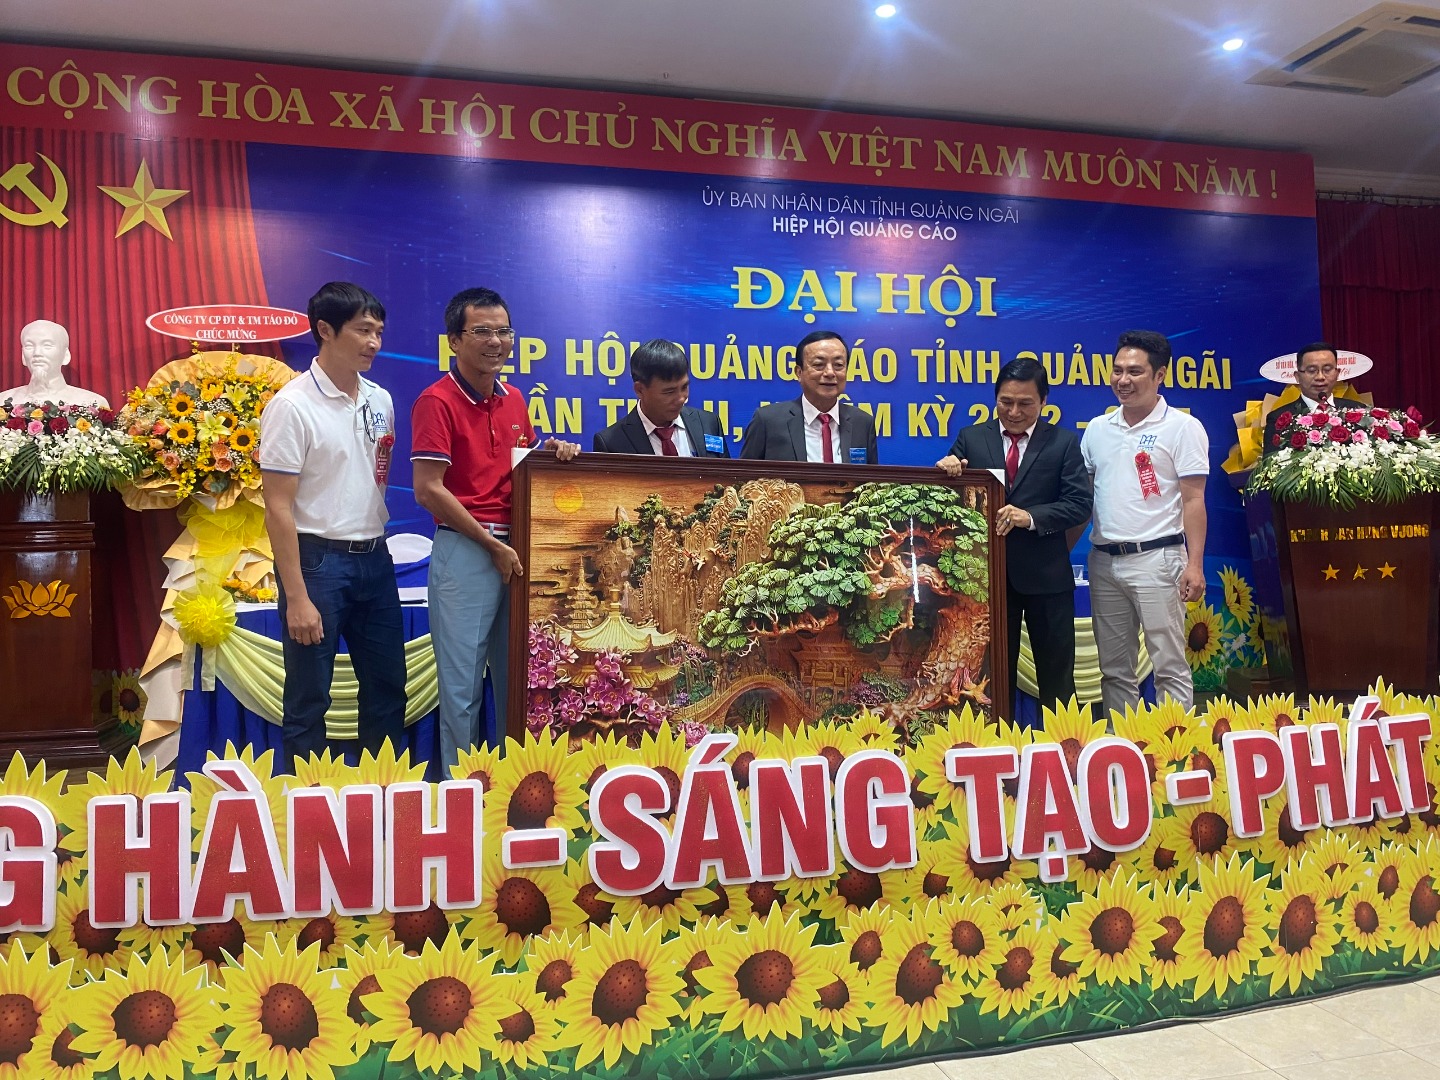 Dai hoi HHQC tinh Quang Ngai nhiem ky II (2022-2027) da thanh cong tot dep